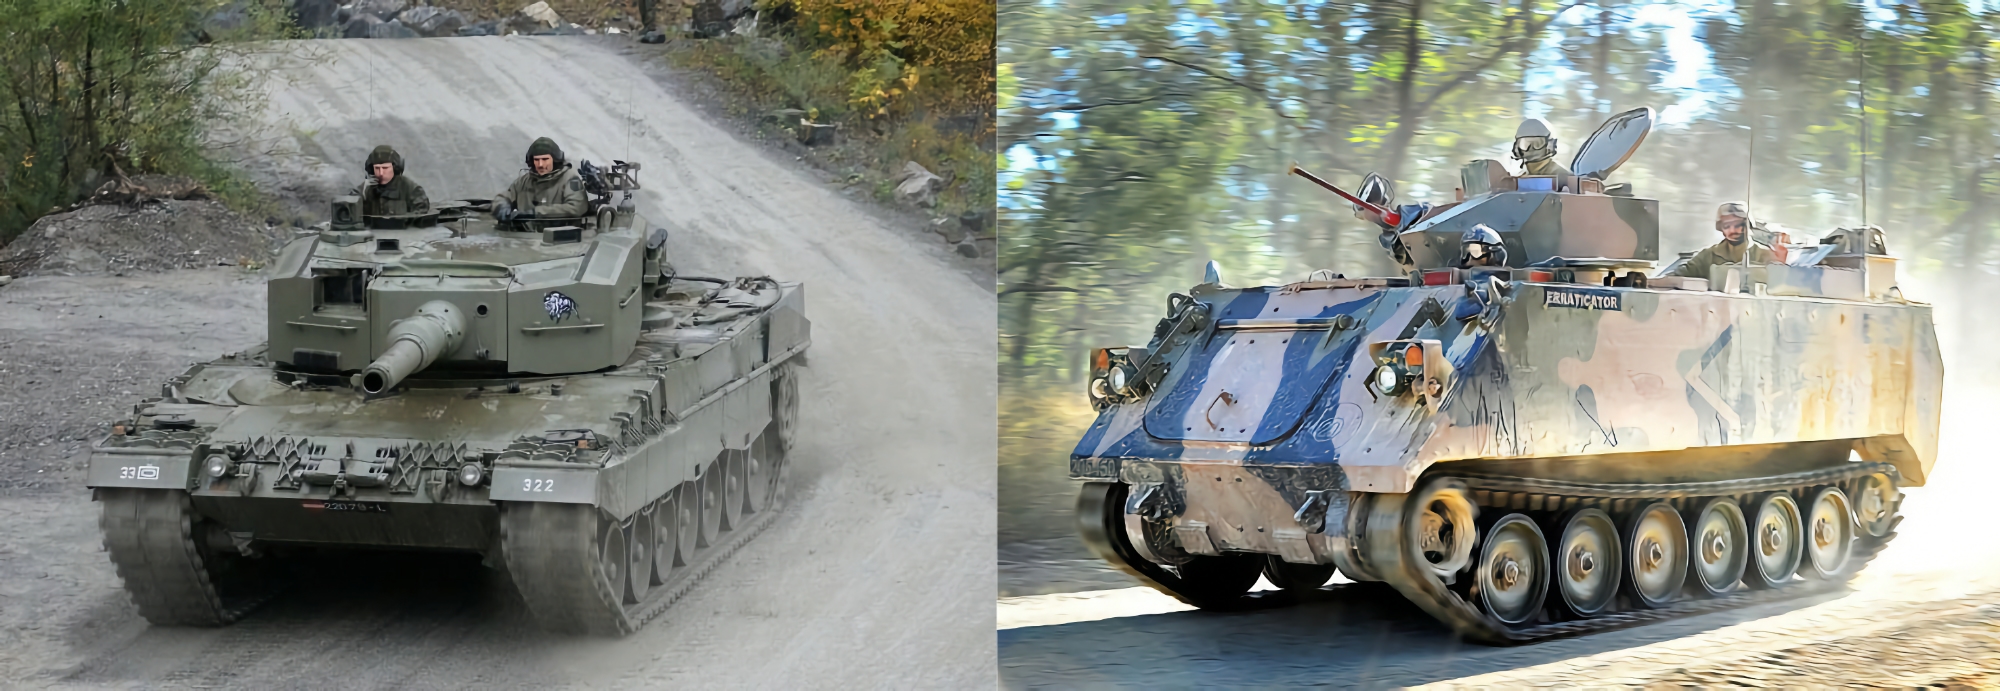 España comienza a transferir tanques Leopard 2A4 y vehículos blindados de transporte de tropas M113 a Ucrania